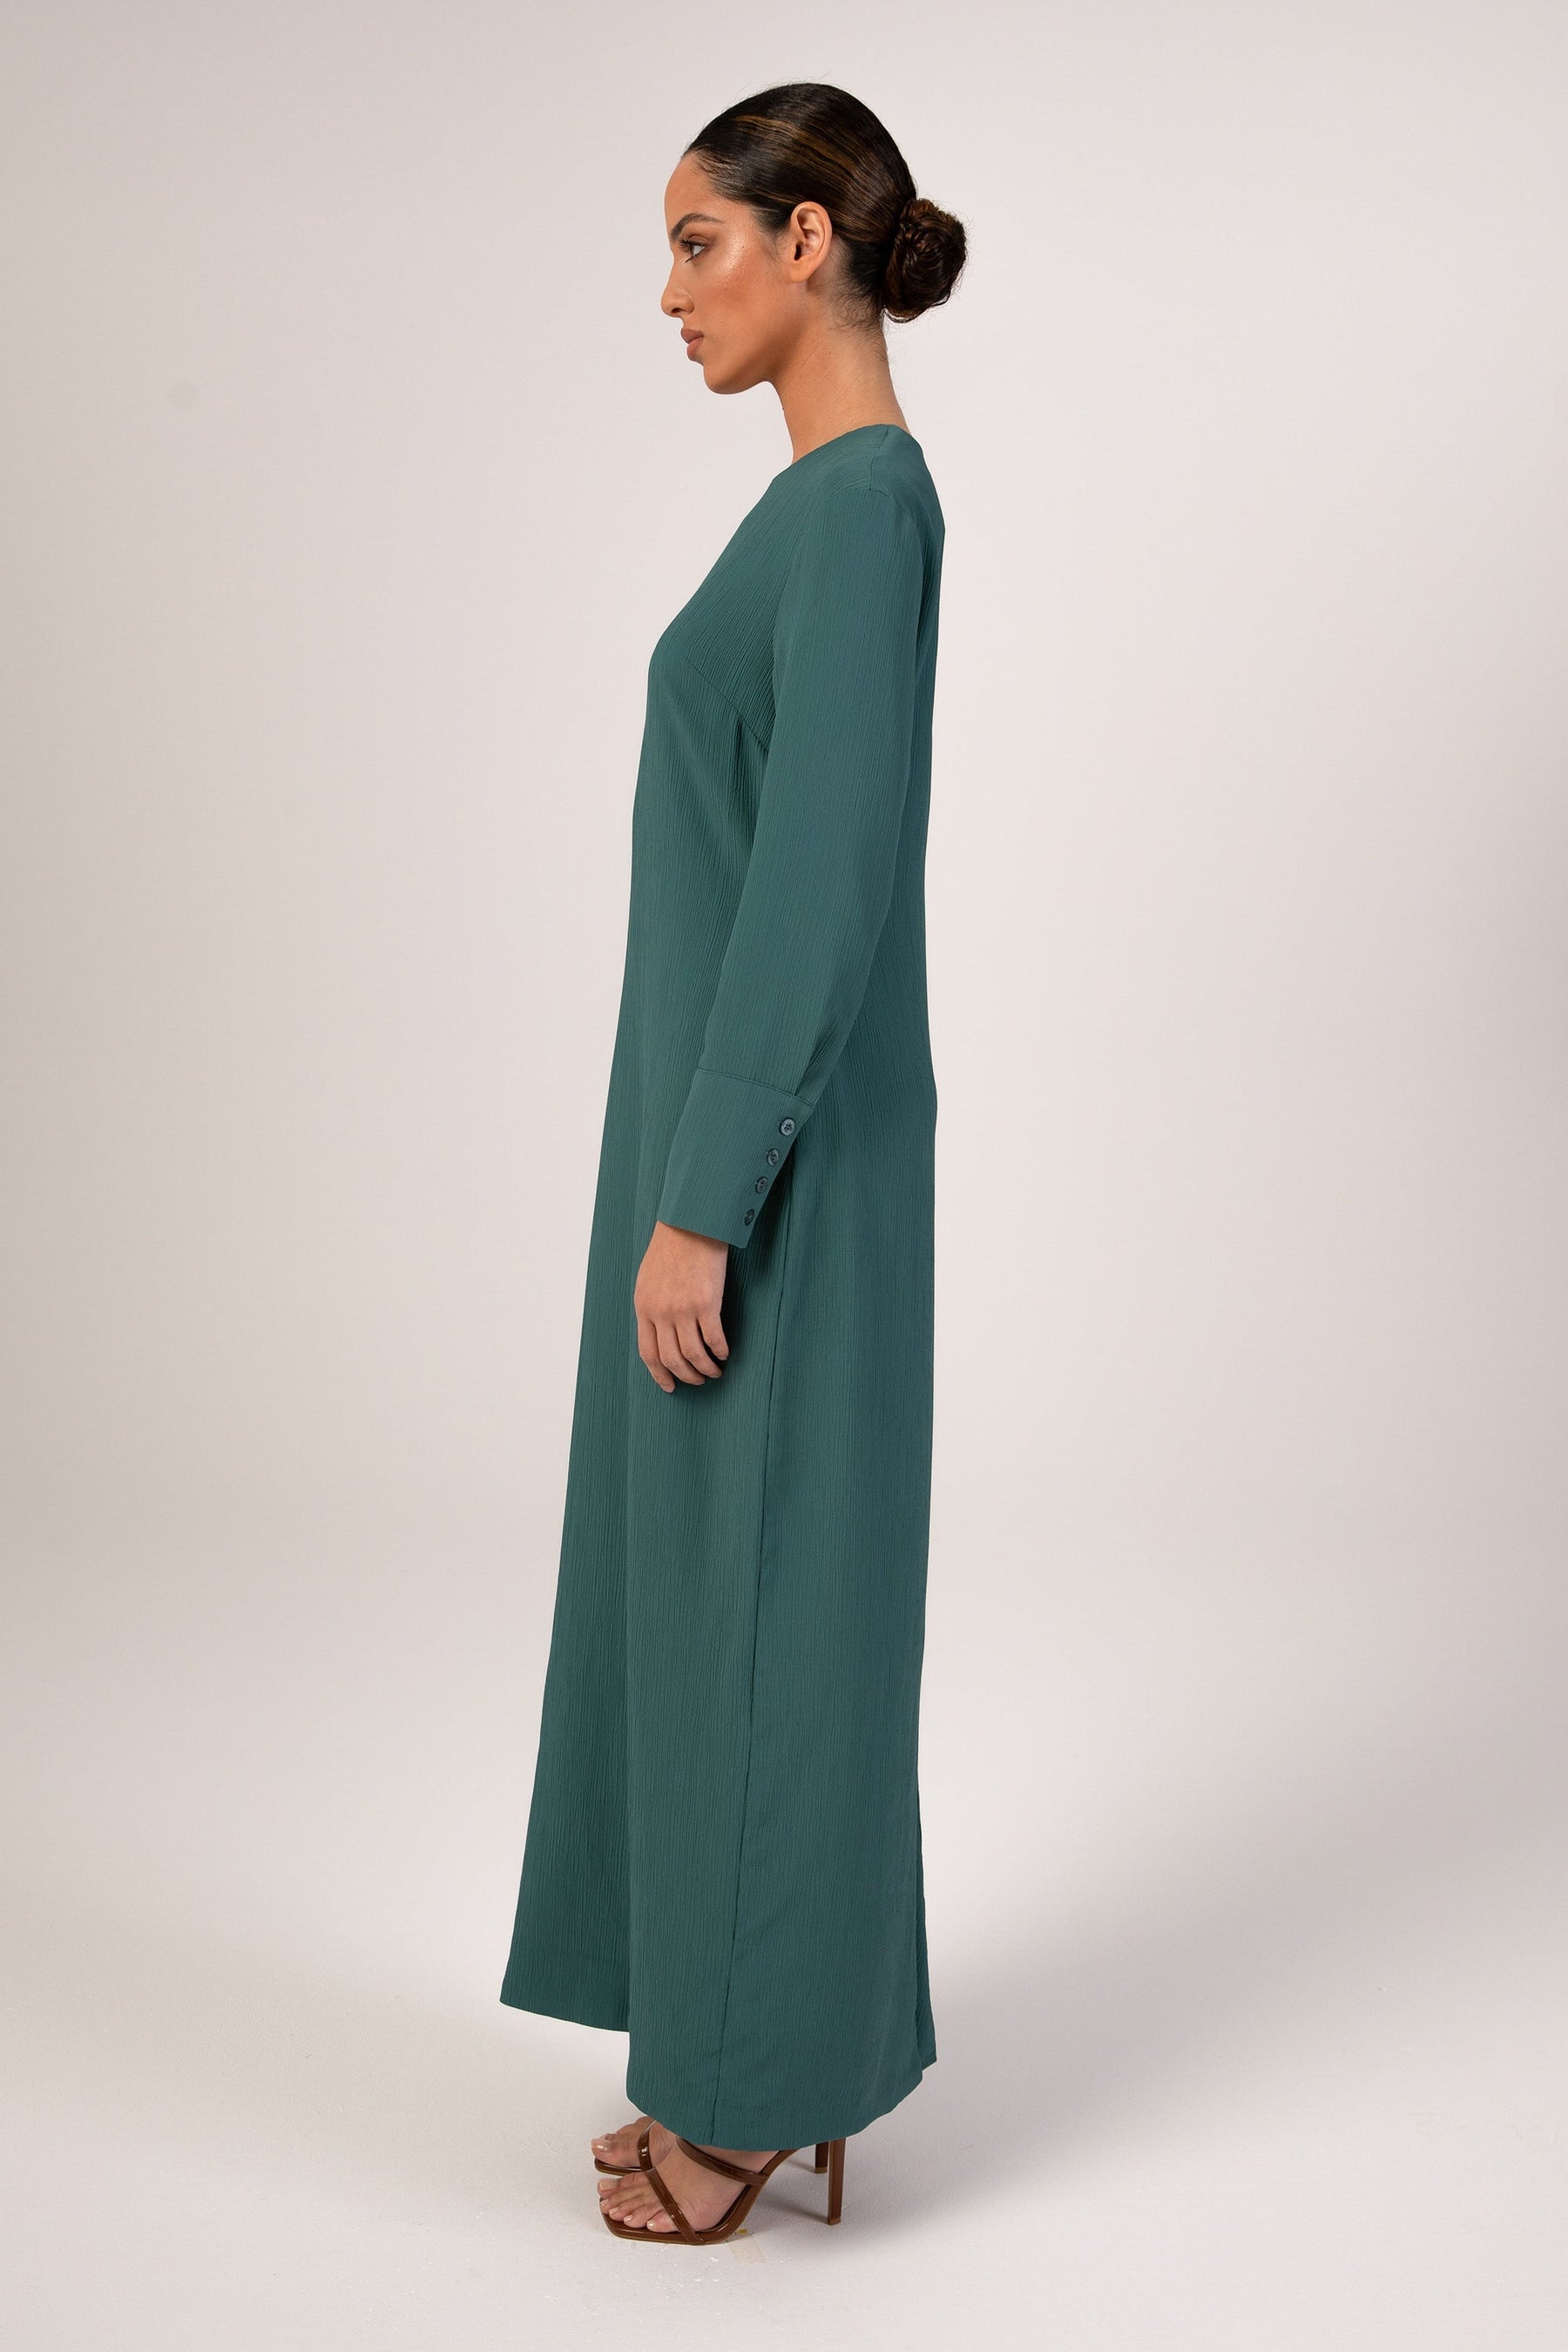 Sajda Textured Maxi Dress - Teal Veiled 